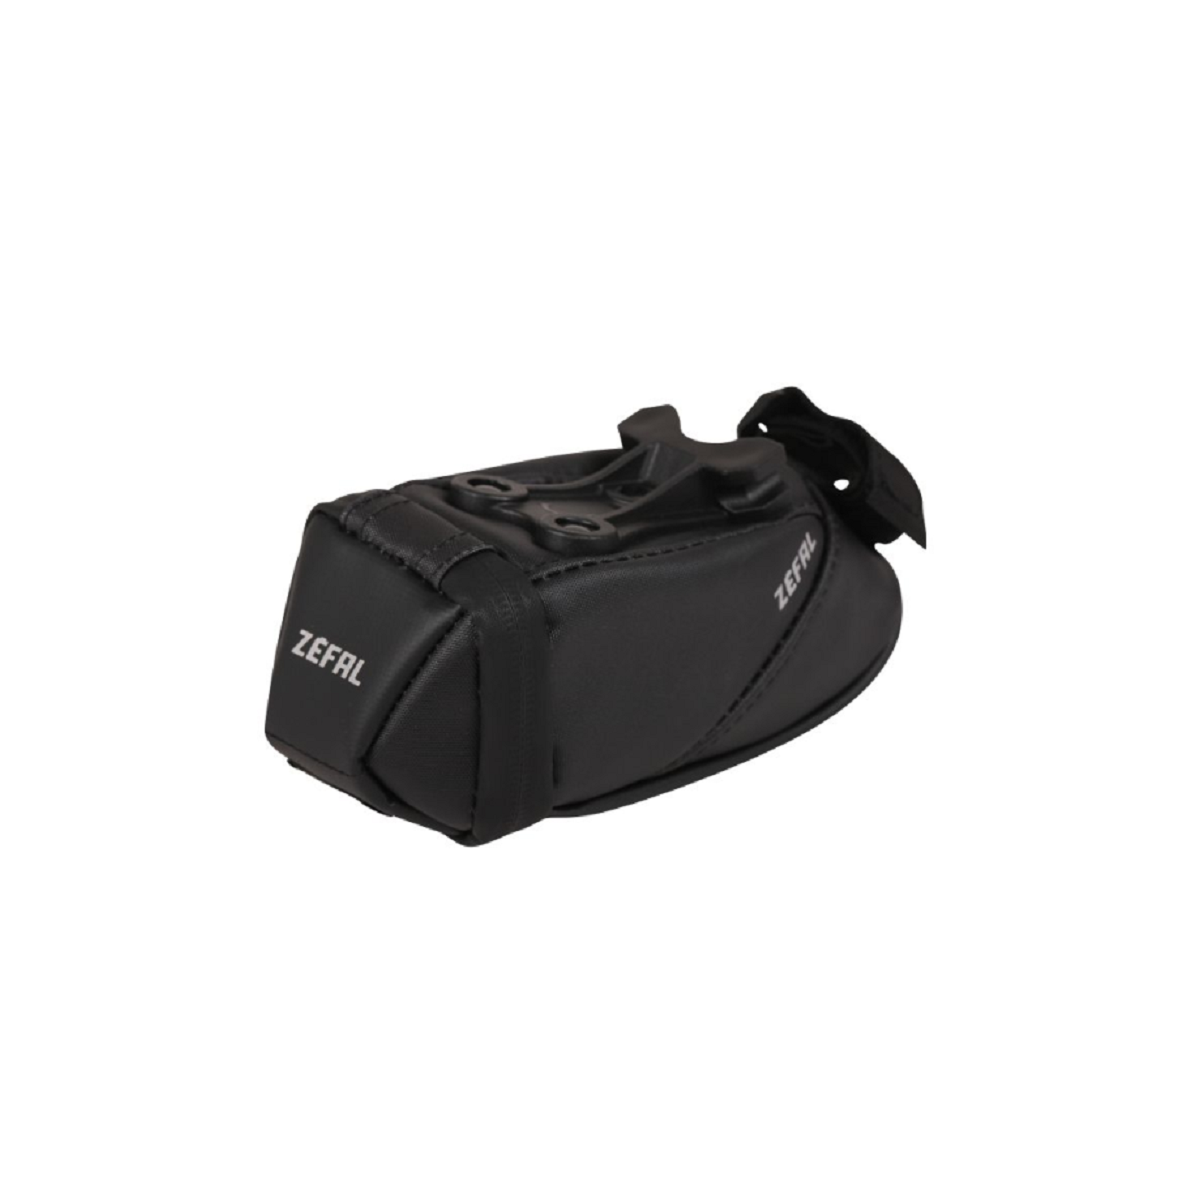 ZEFAL IRON PACK 2 S-TF 0.5L saddle bag - black